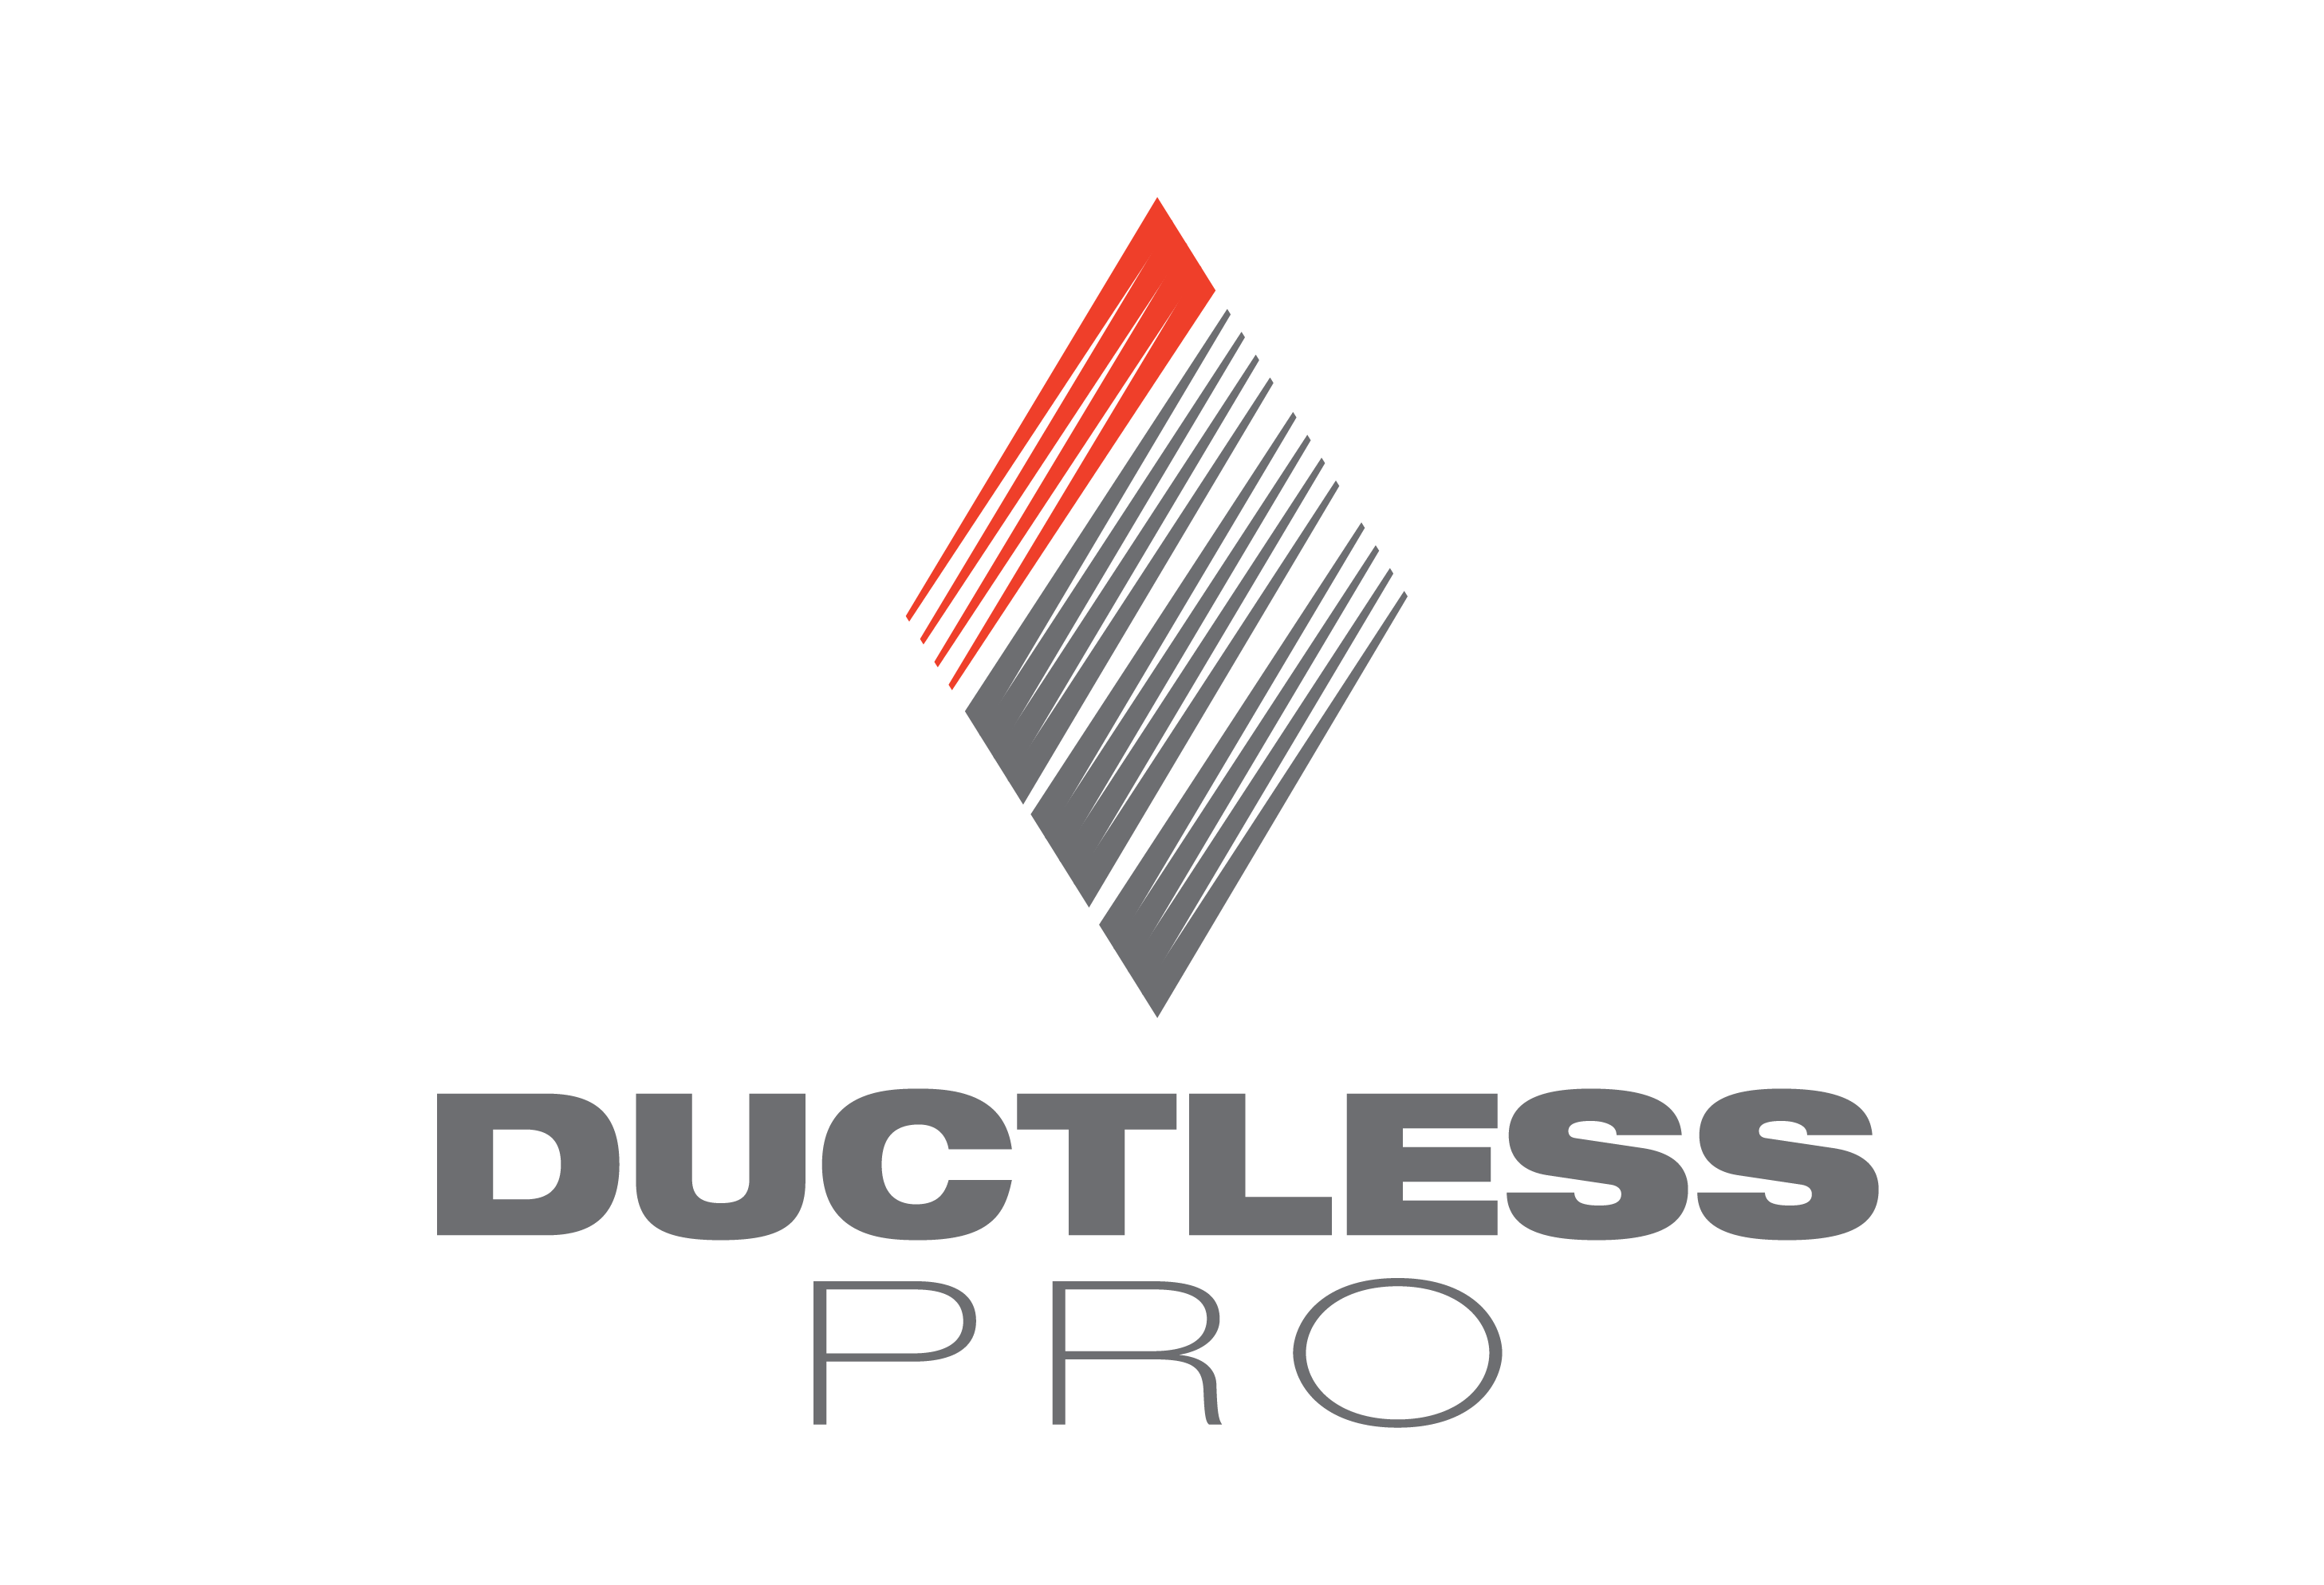 ductless pro dealer logo